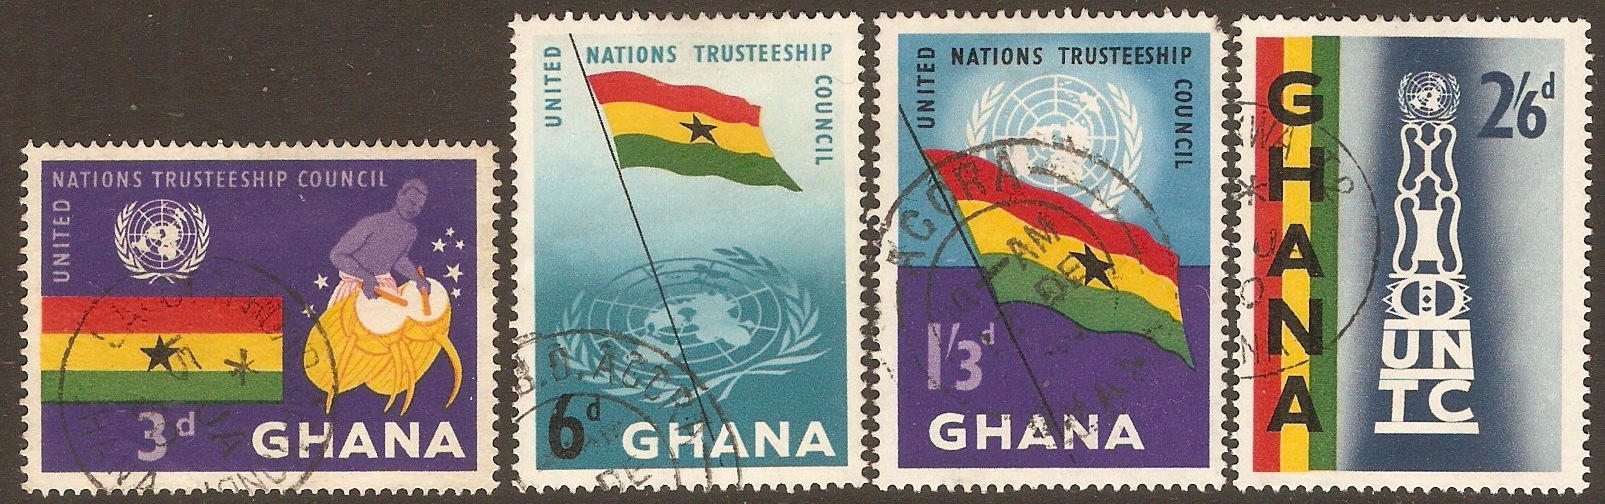 Ghana 1959 UN Trusteeship Council Set. SG234-SG237.